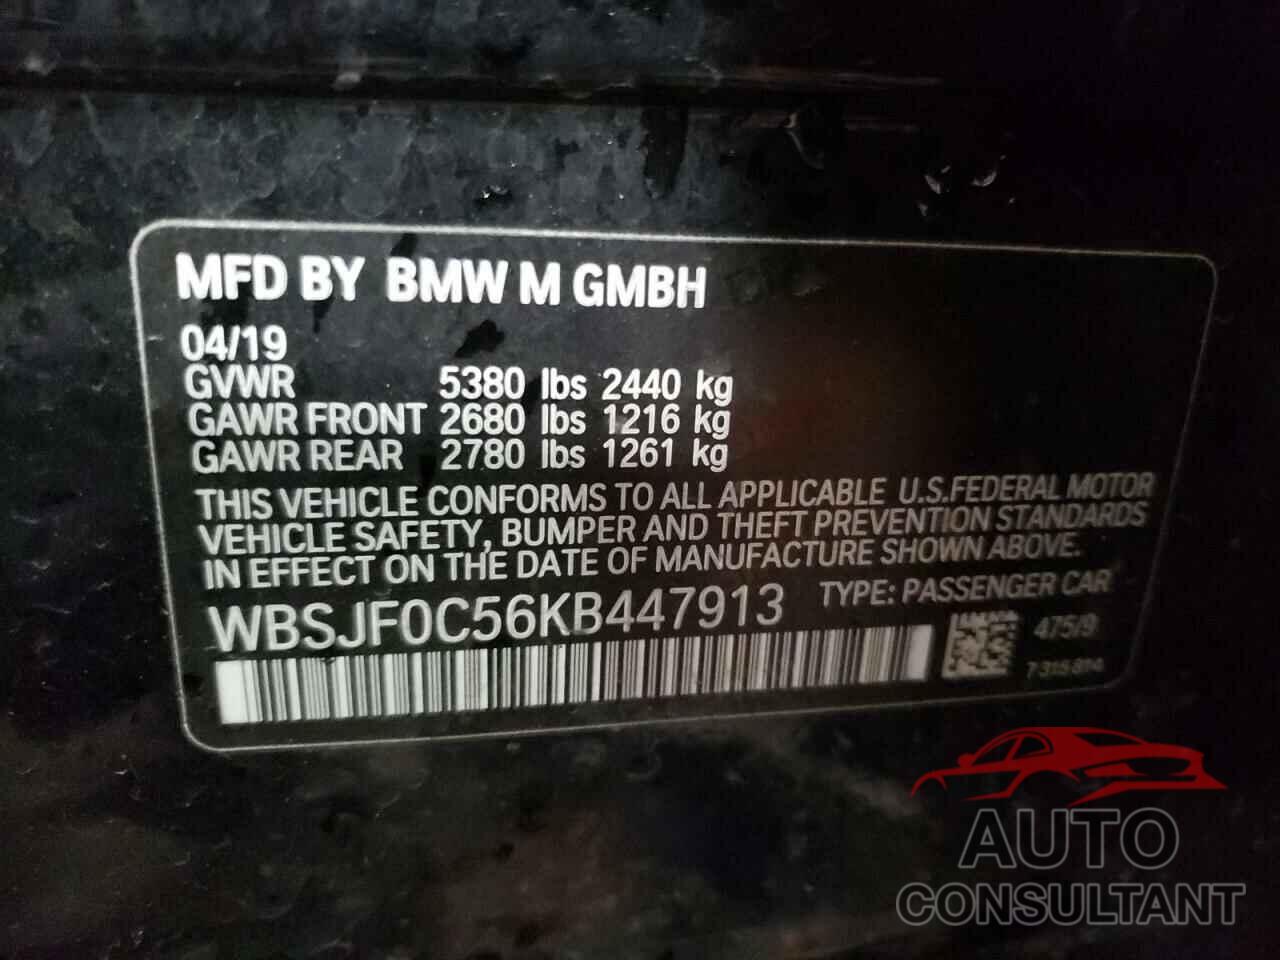 BMW M5 2019 - WBSJF0C56KB447913